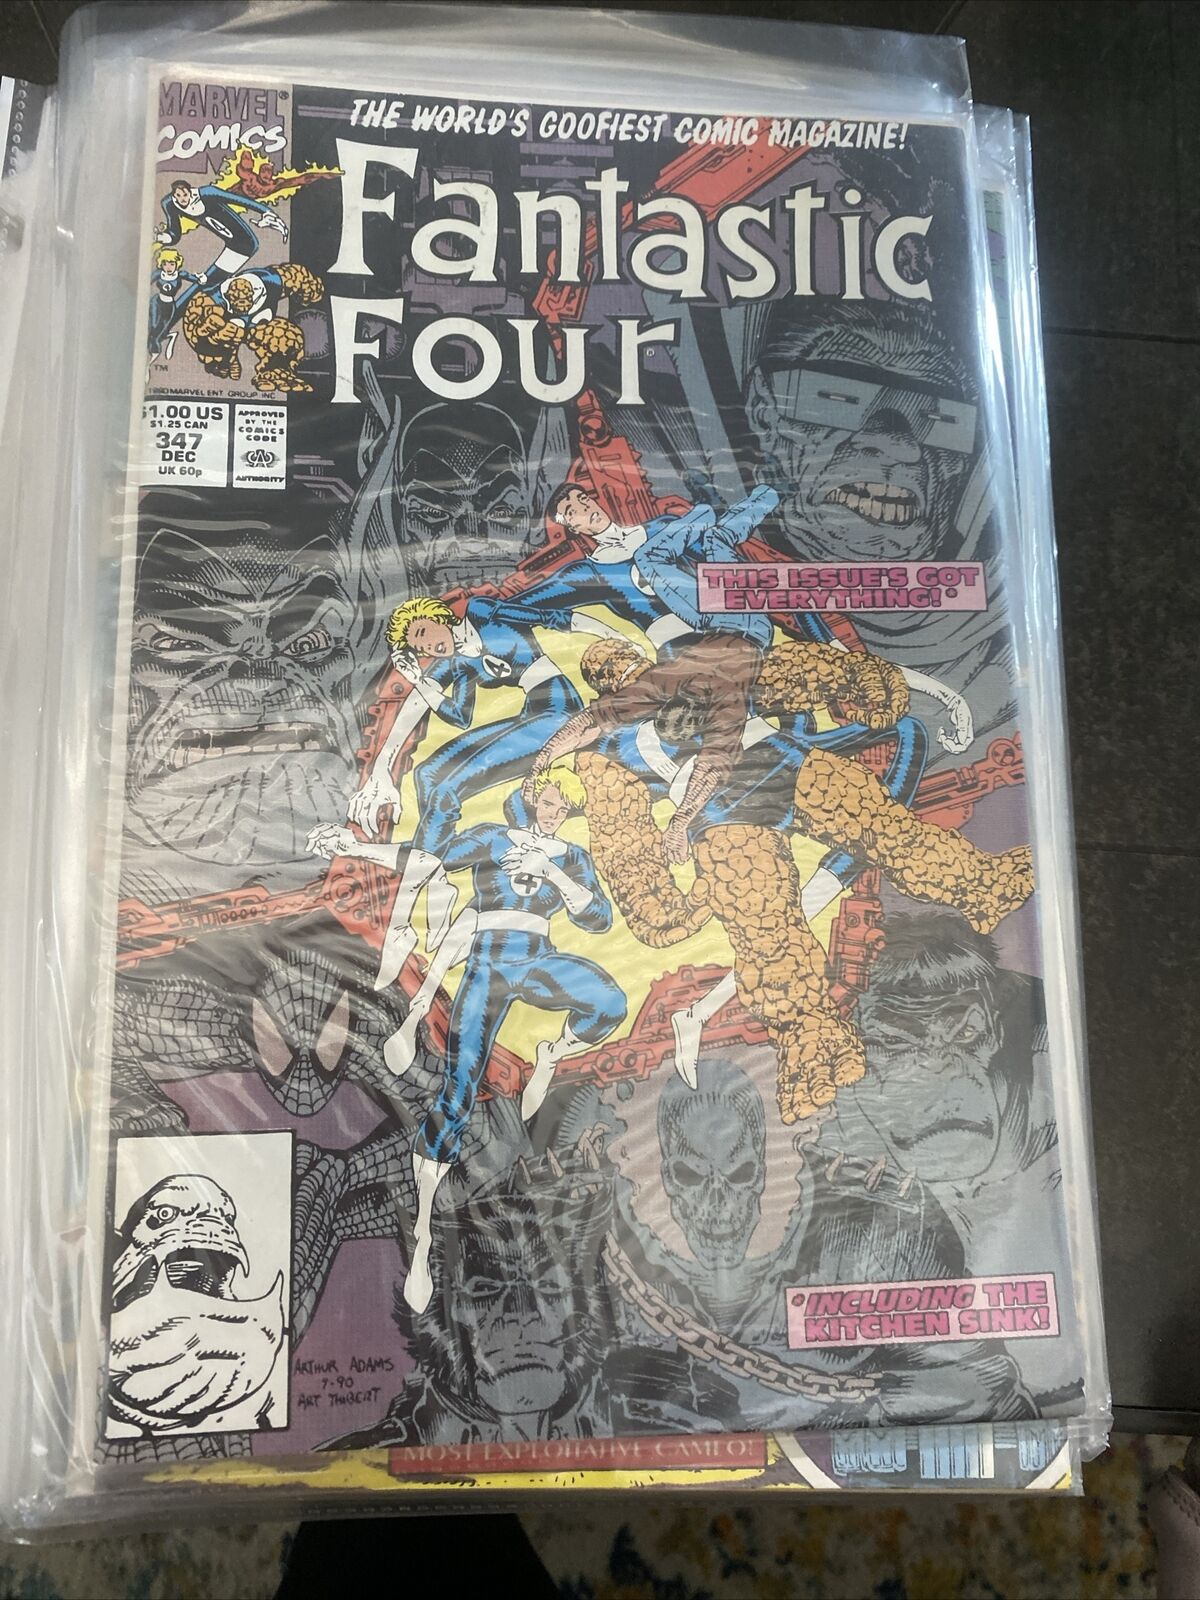 Fantastic Four #347 (Marvel, December 1990)